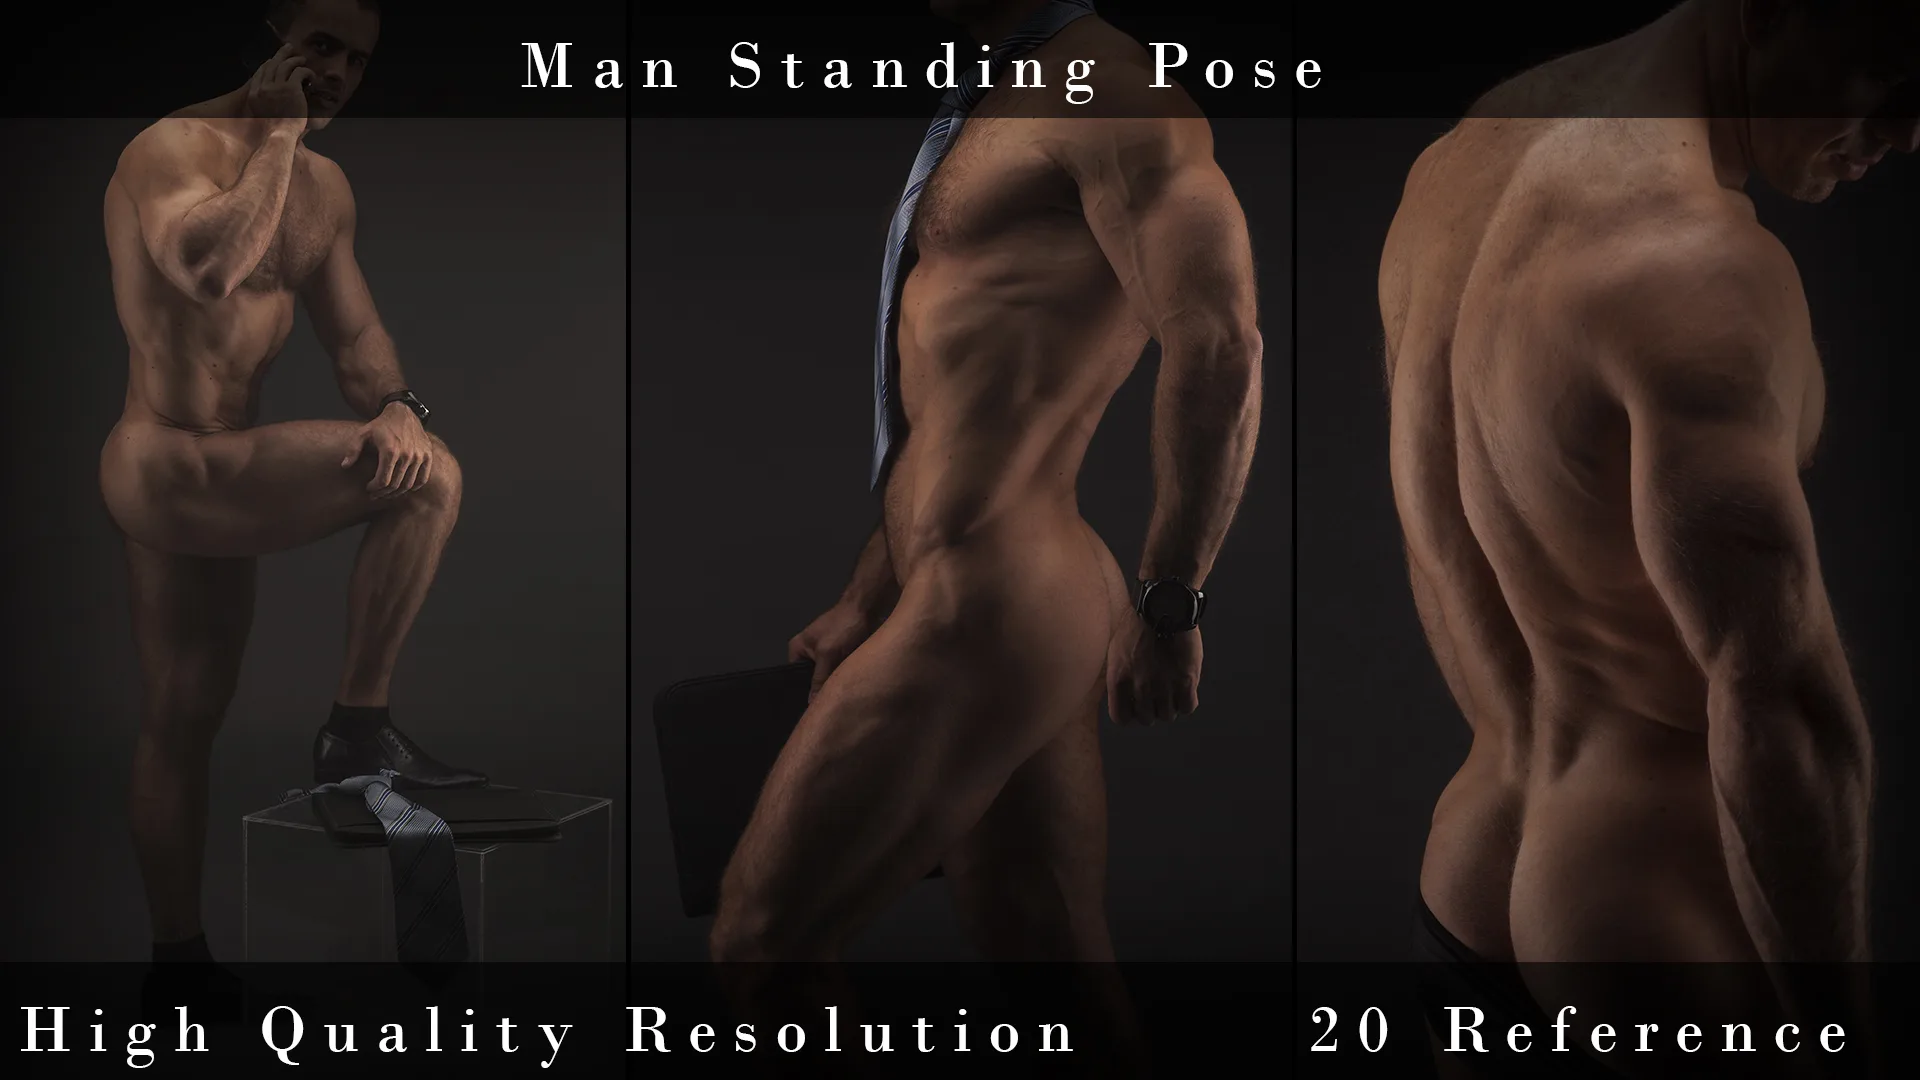 Man Standing Pose